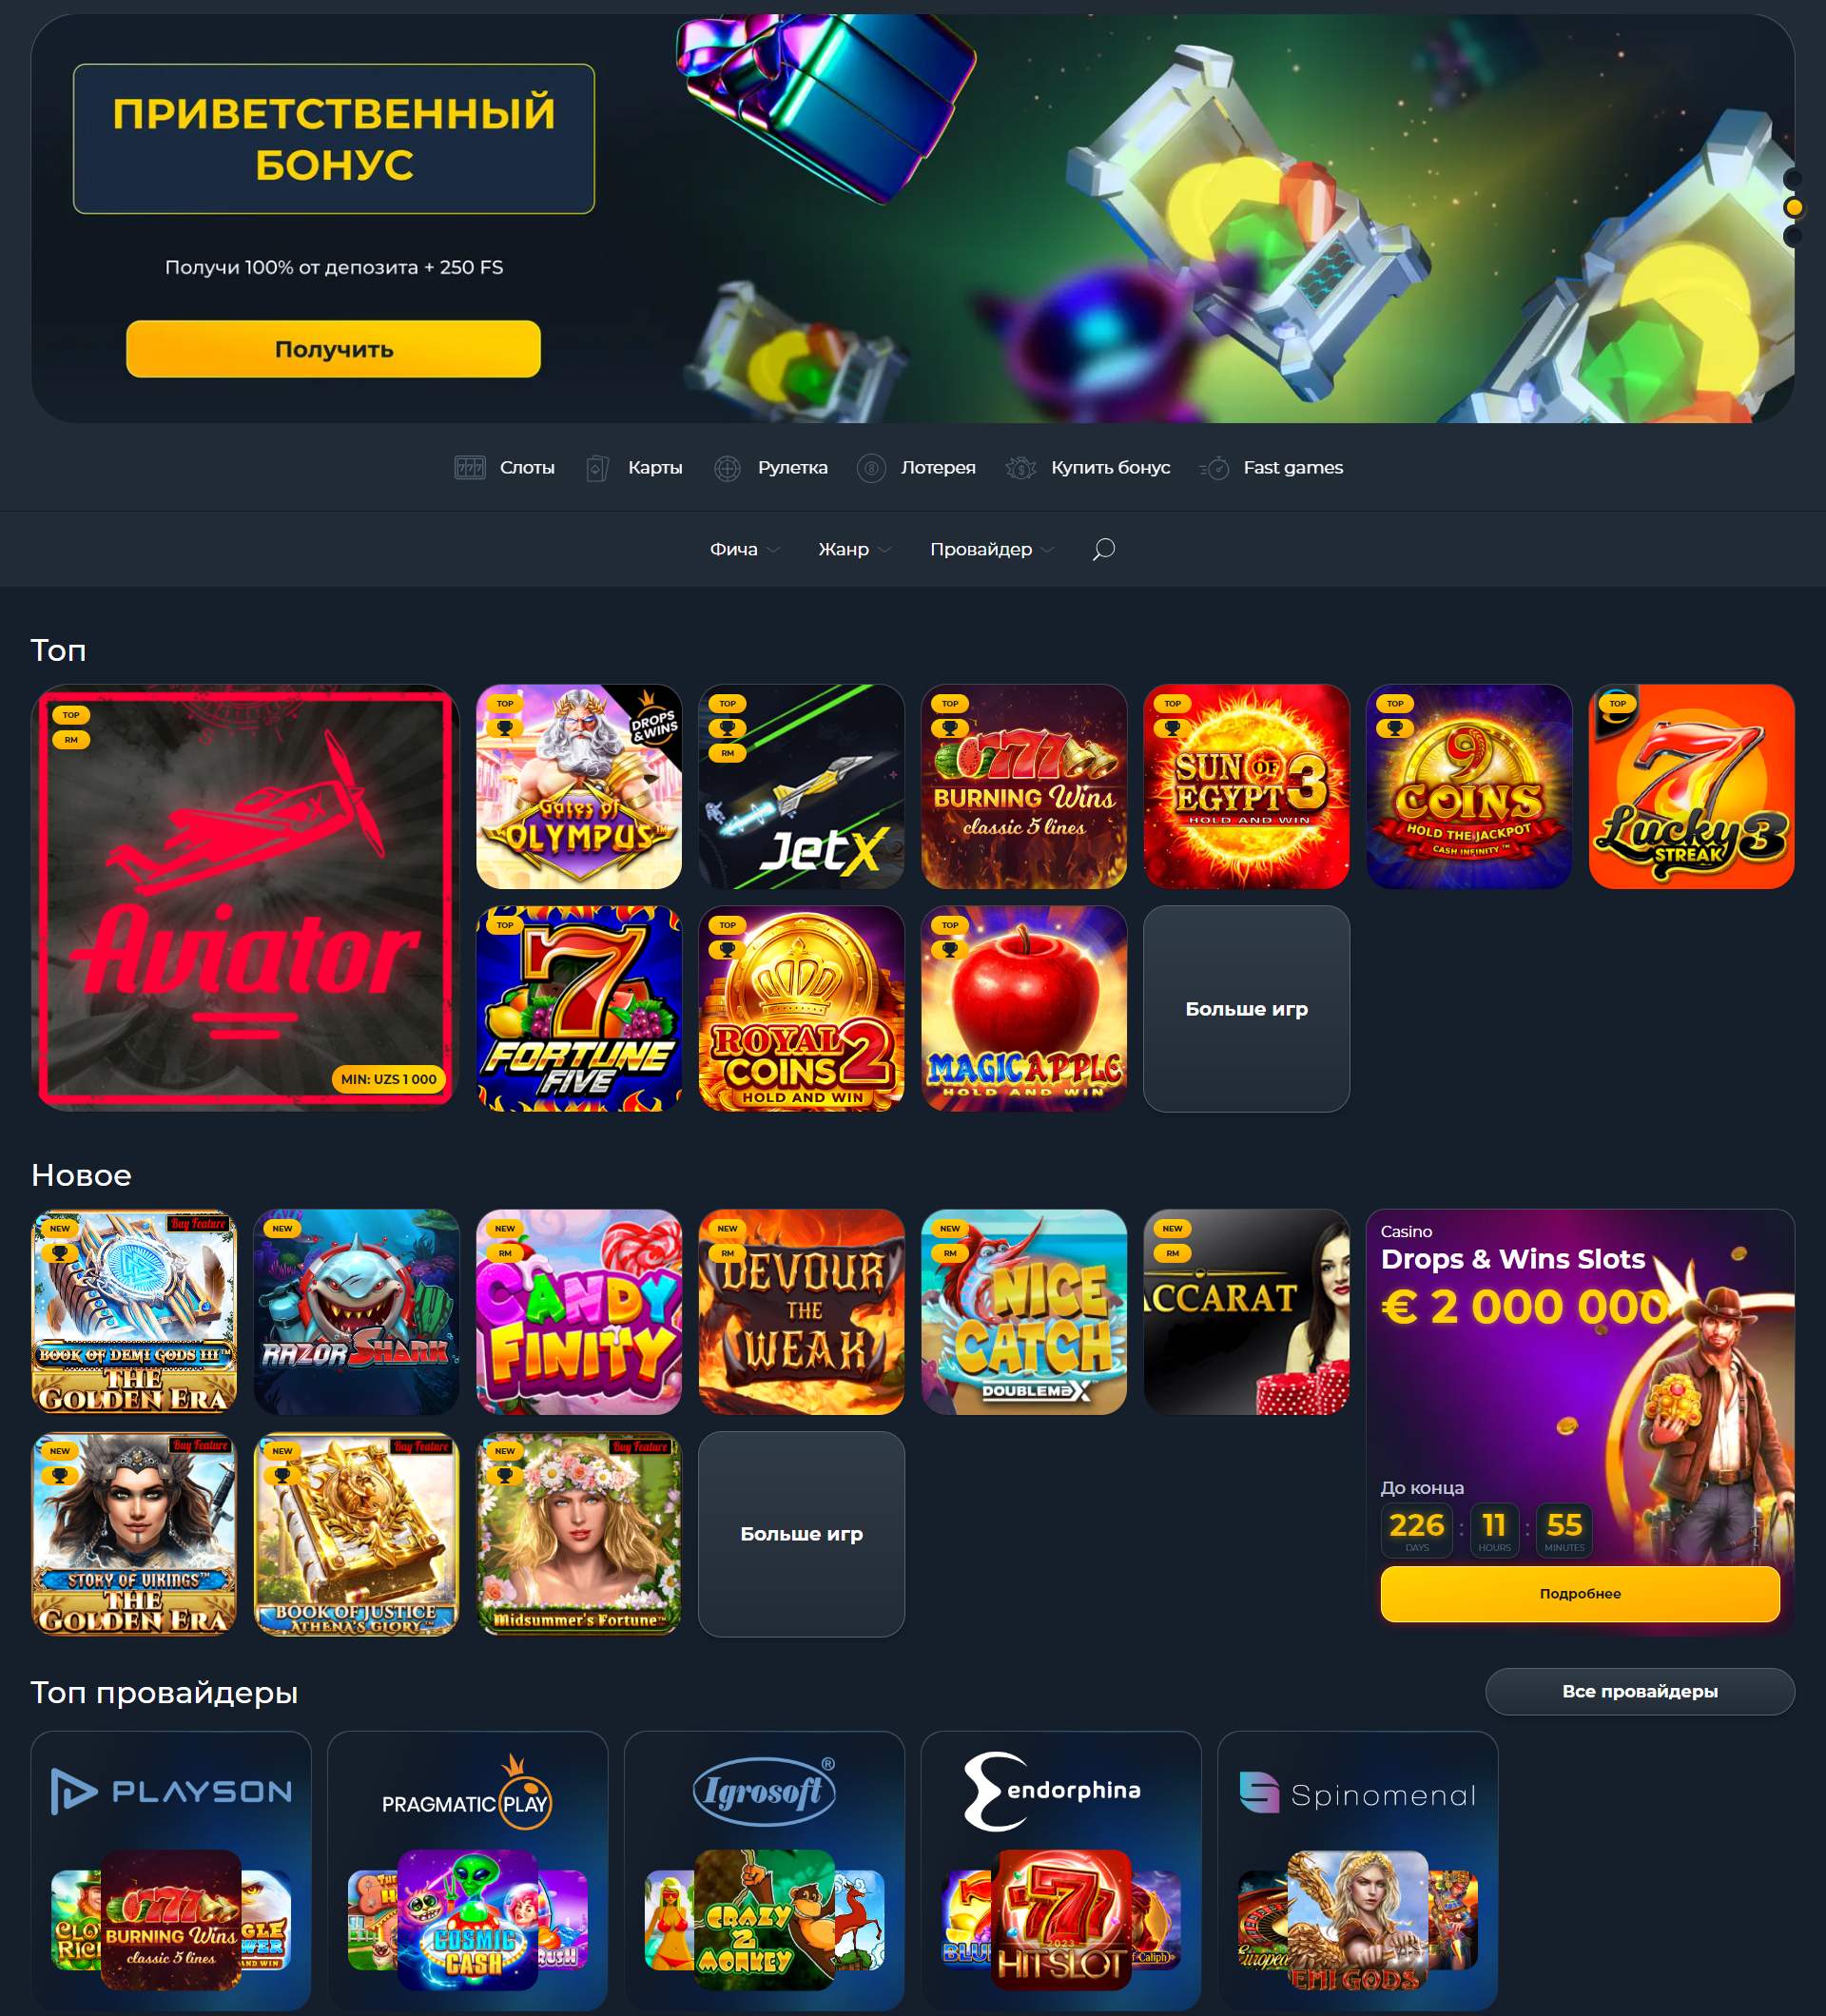 Vivi Casino - Онлайн-развлечения на высшем уровне